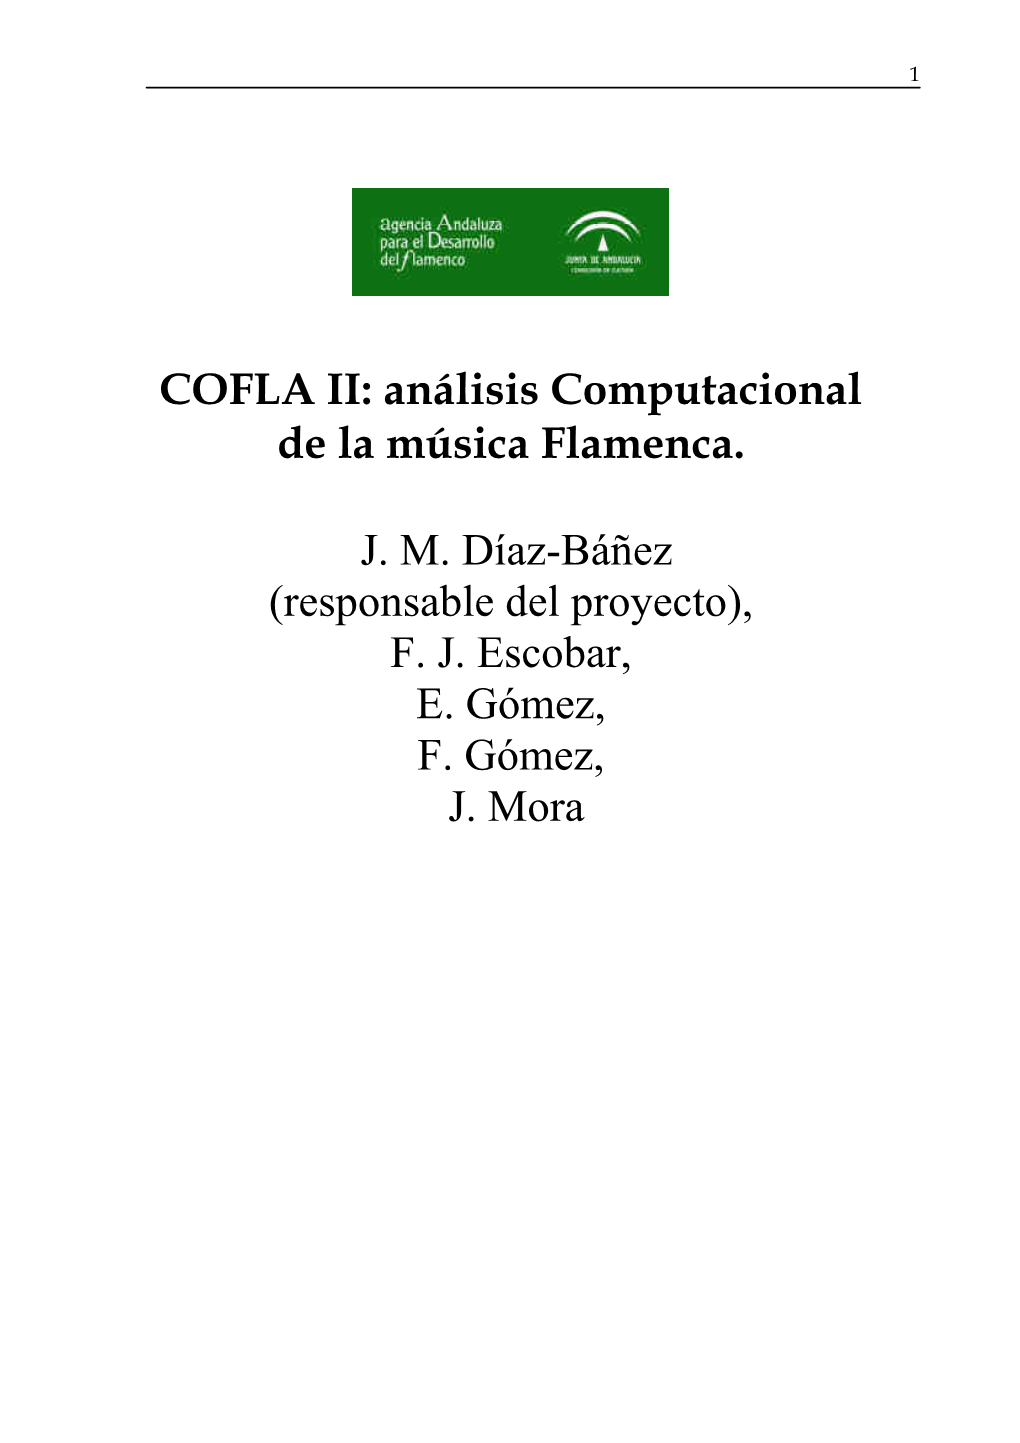 COFLA II: Análisis Computacional De La Música Flamenca. JM Díaz-Báñez